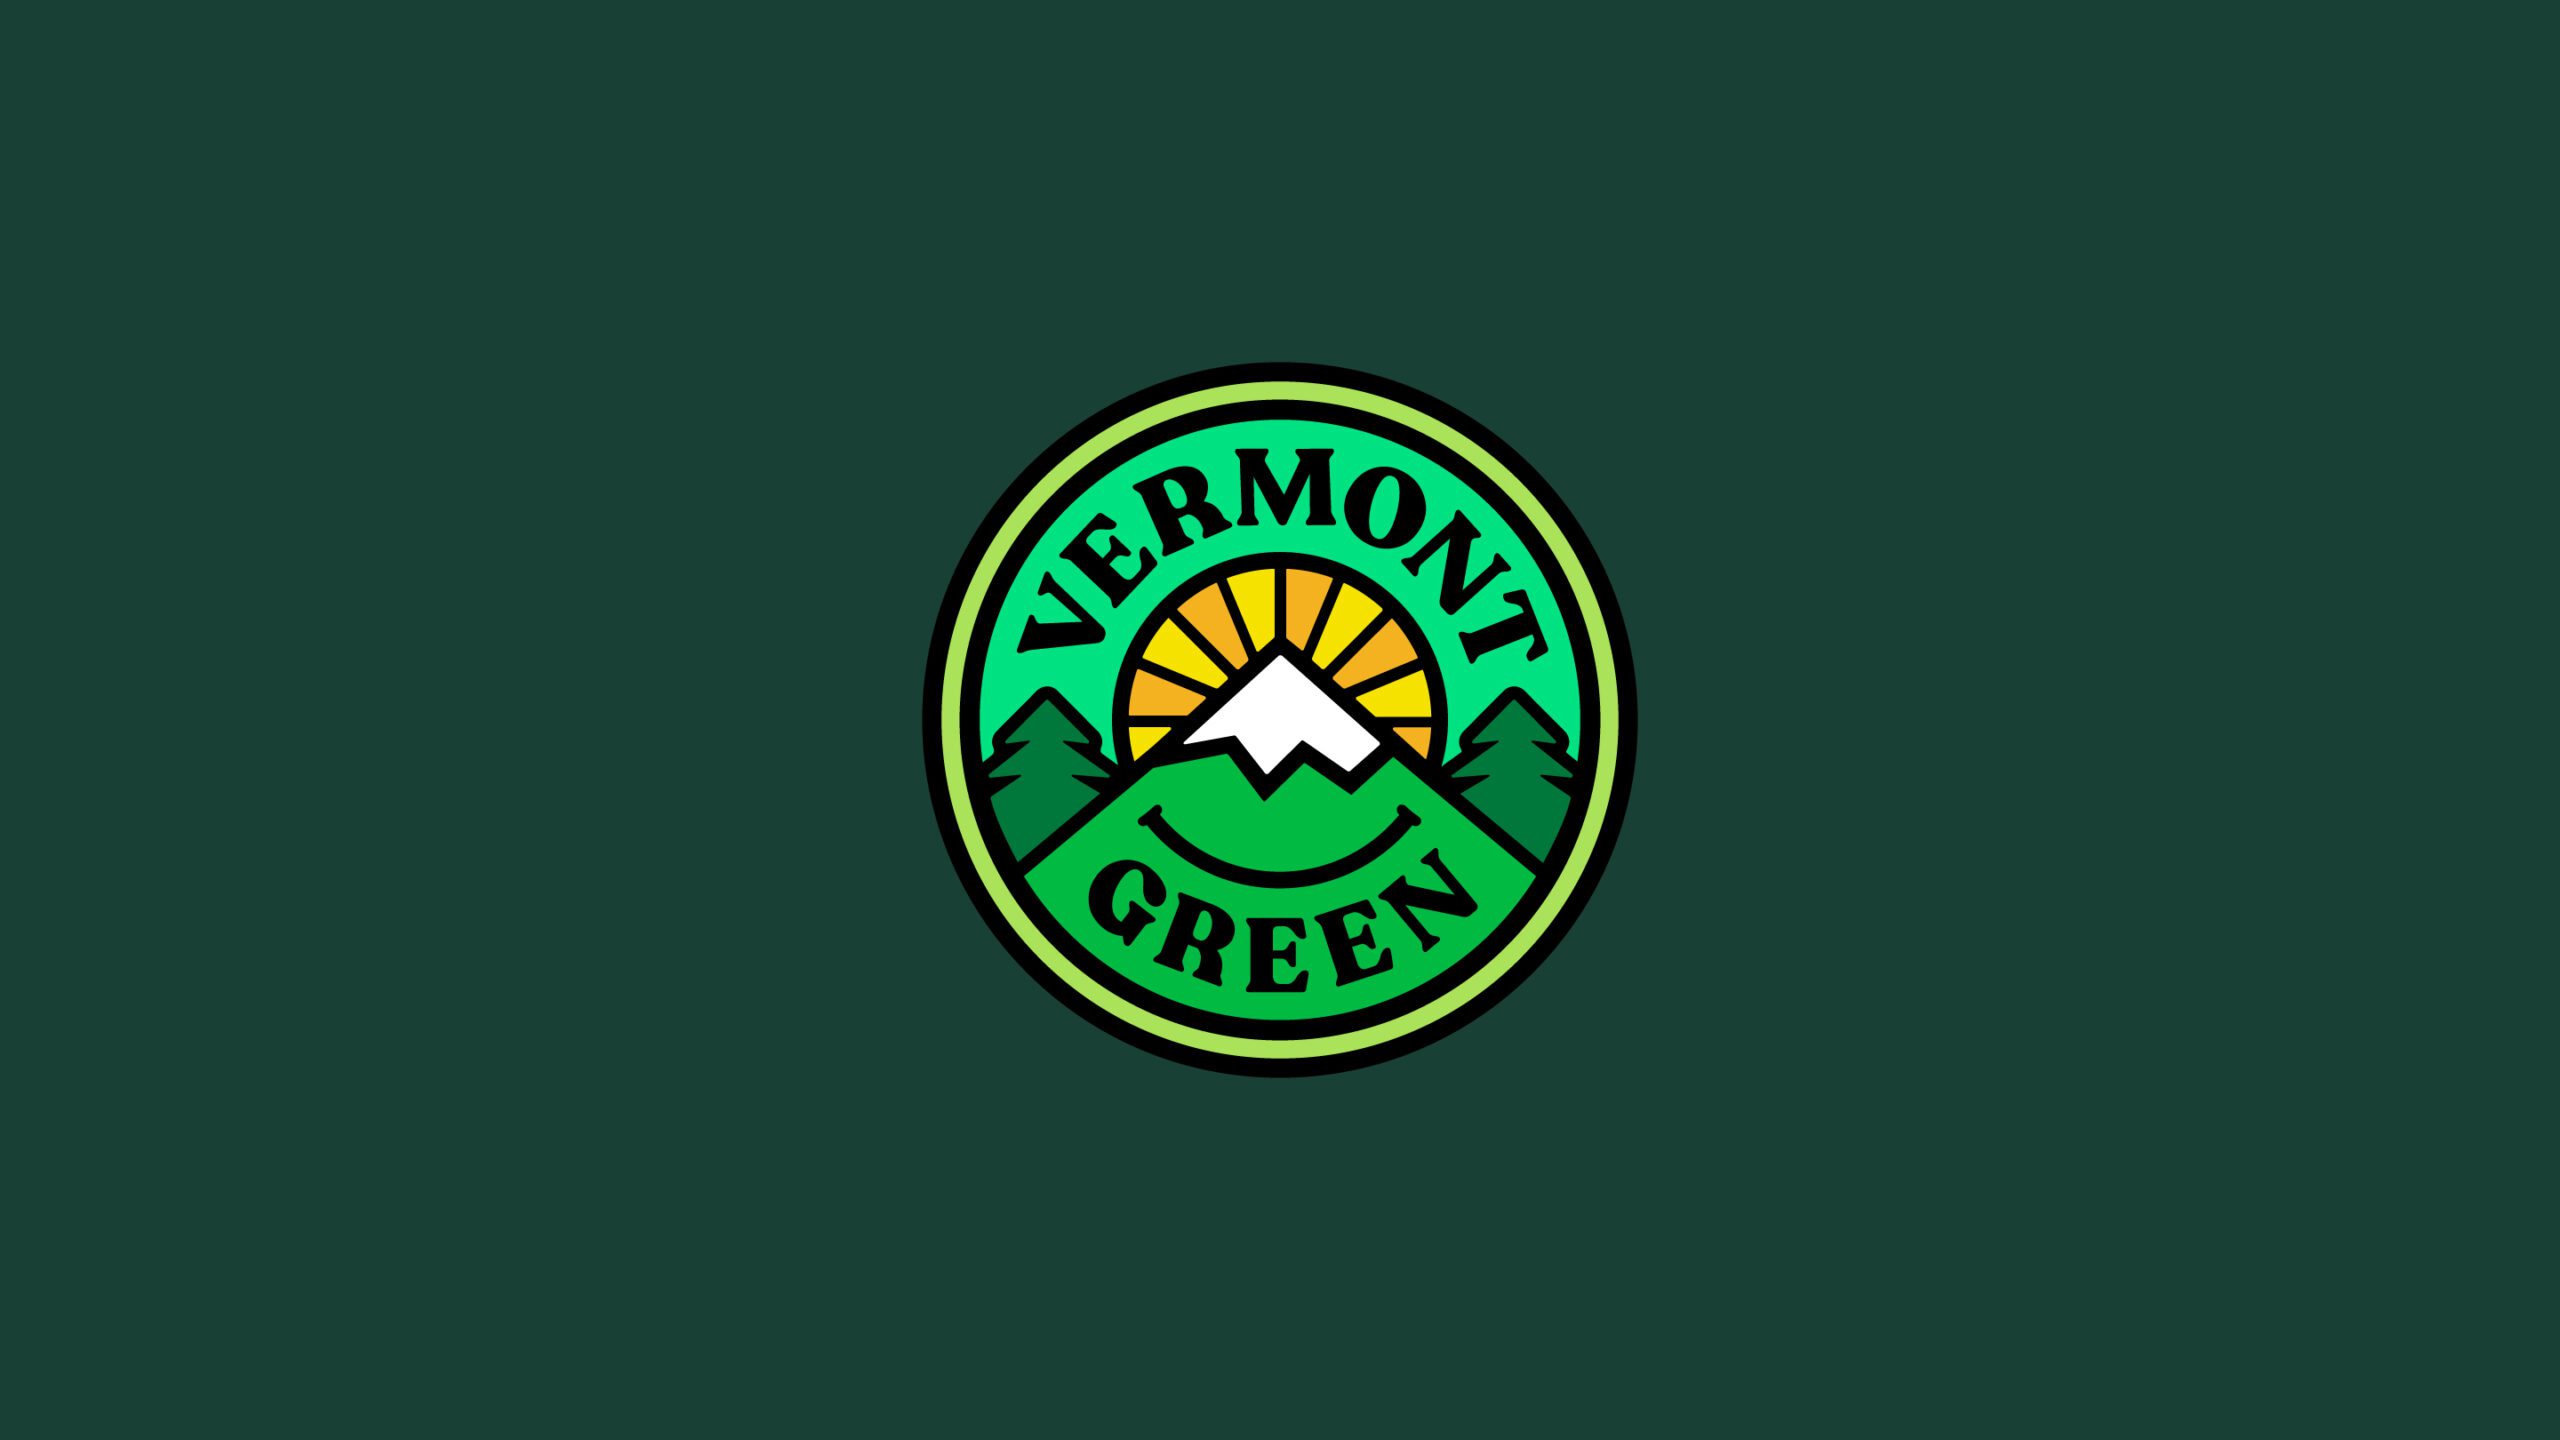 Vermont Green FC Crest, Matthew Wolff Design